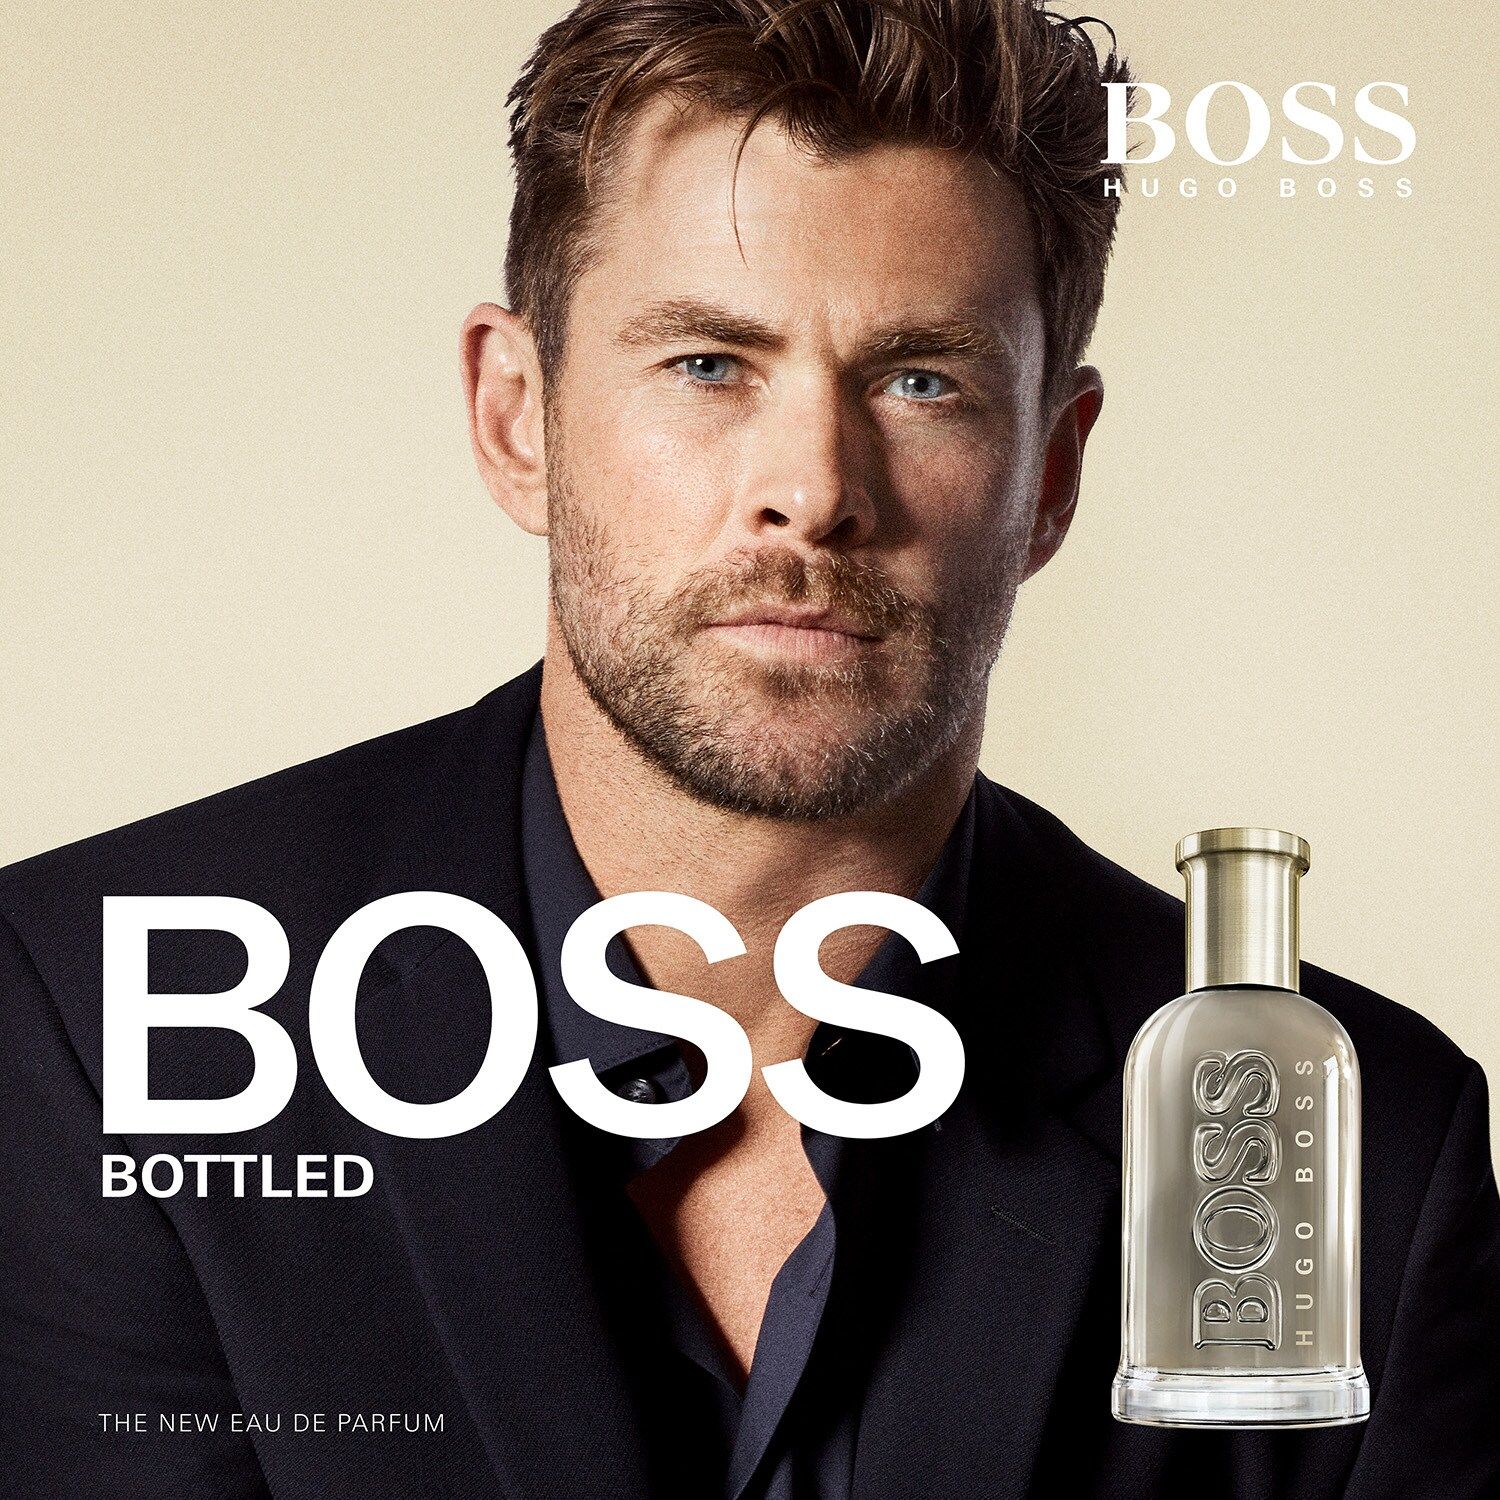 Boss Bottled Eau de Parfum Hugo Boss zapach to nowe perfumy dla